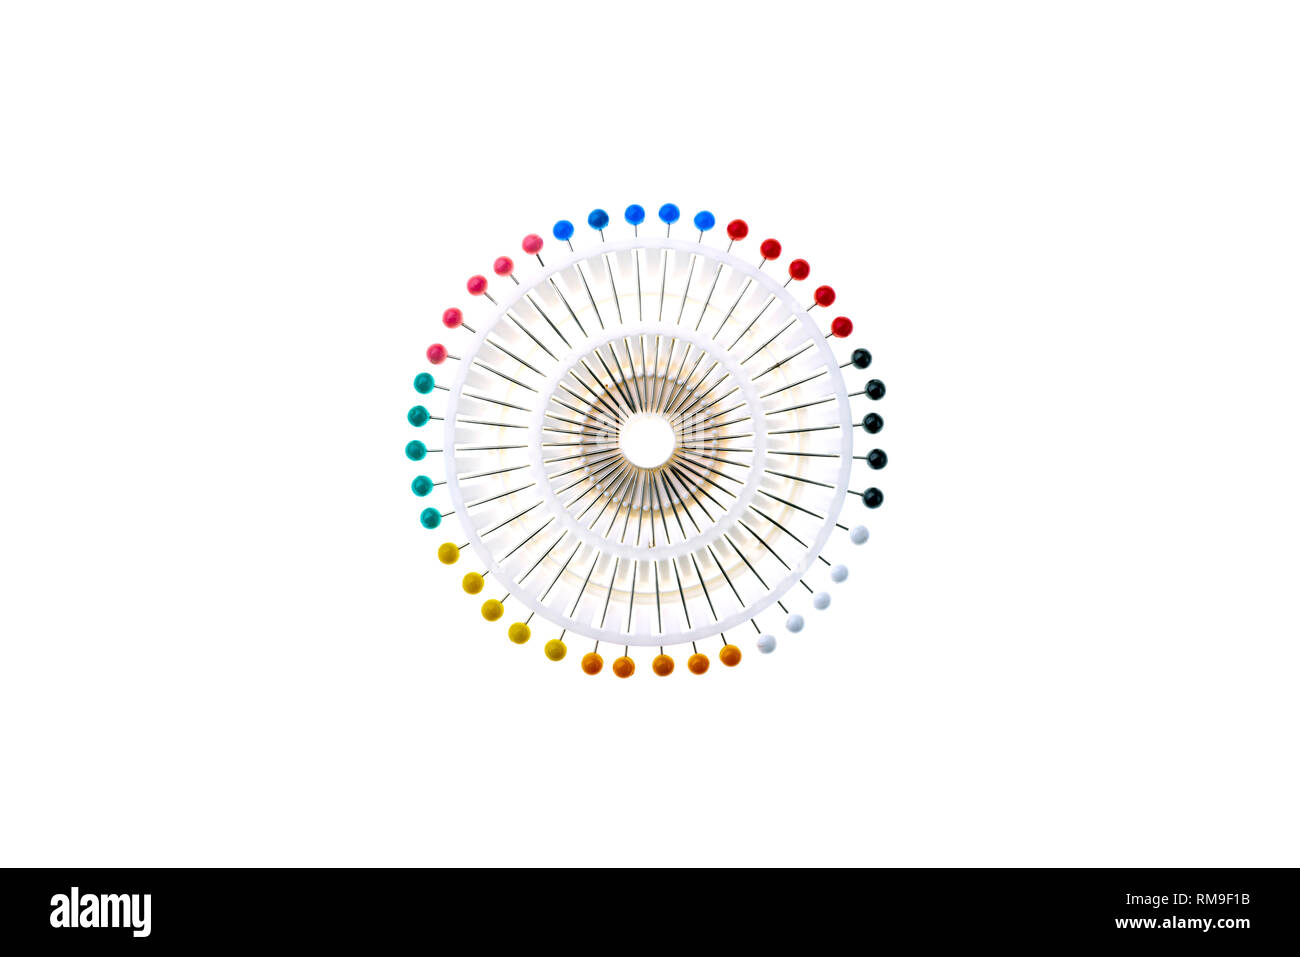 Ensemble de tête ronde colorée ou berry pins, dans un support en plastique blanc formant une image abstraite. Banque D'Images